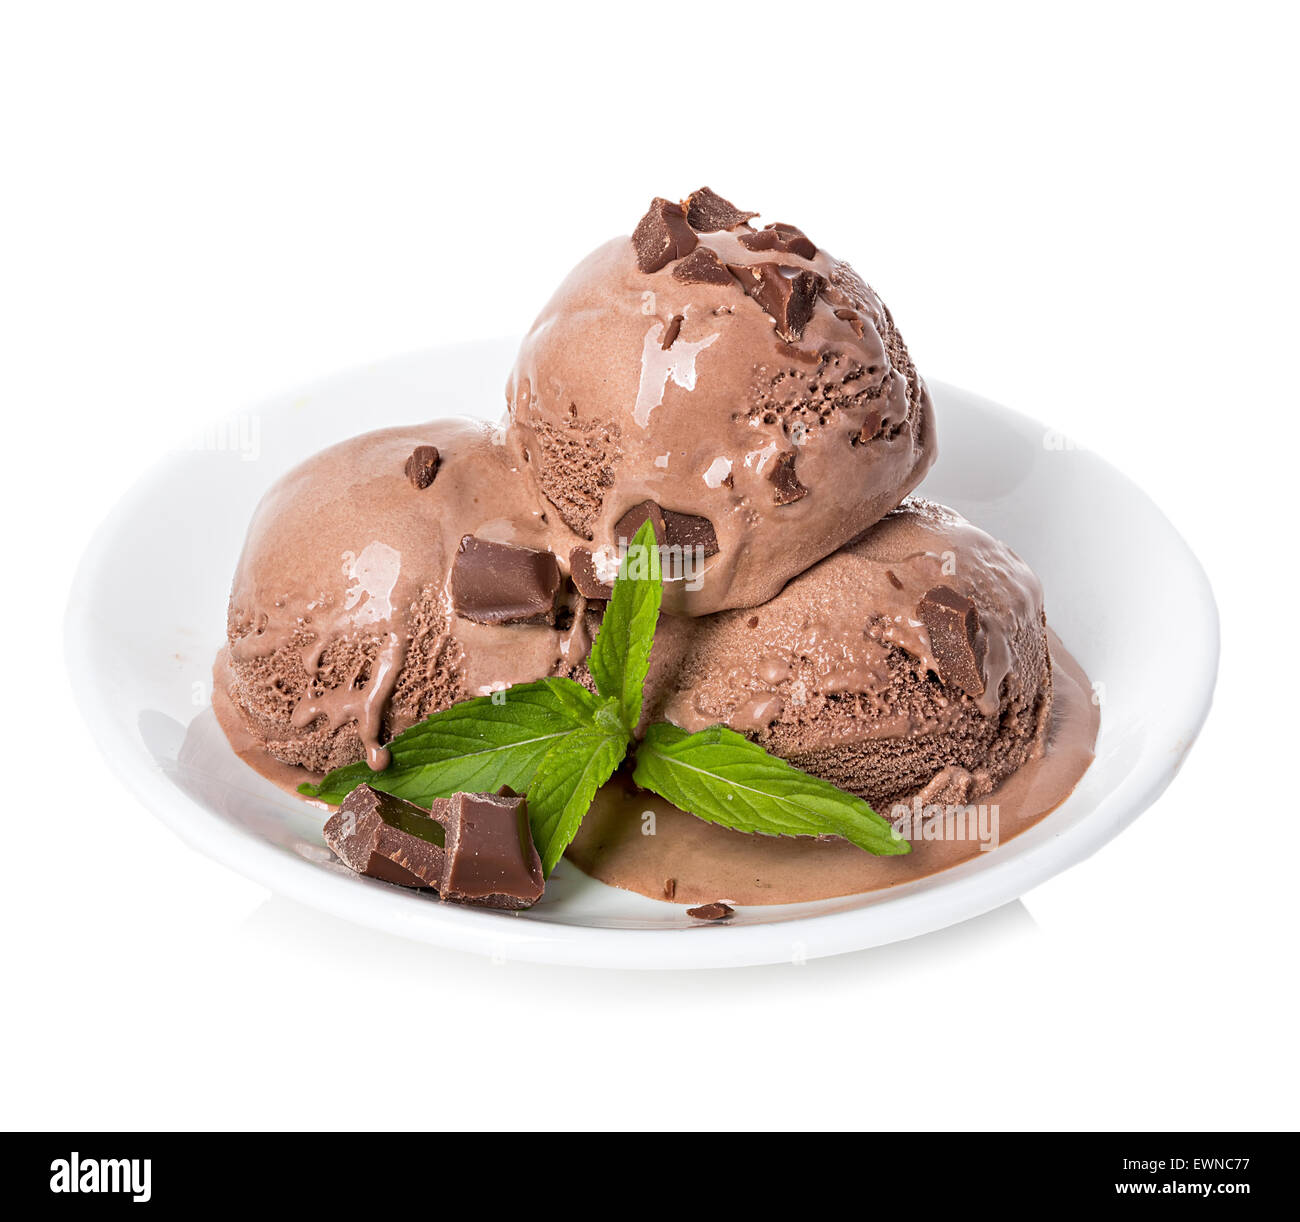 Chocolate ice cream isolated Stock Photo